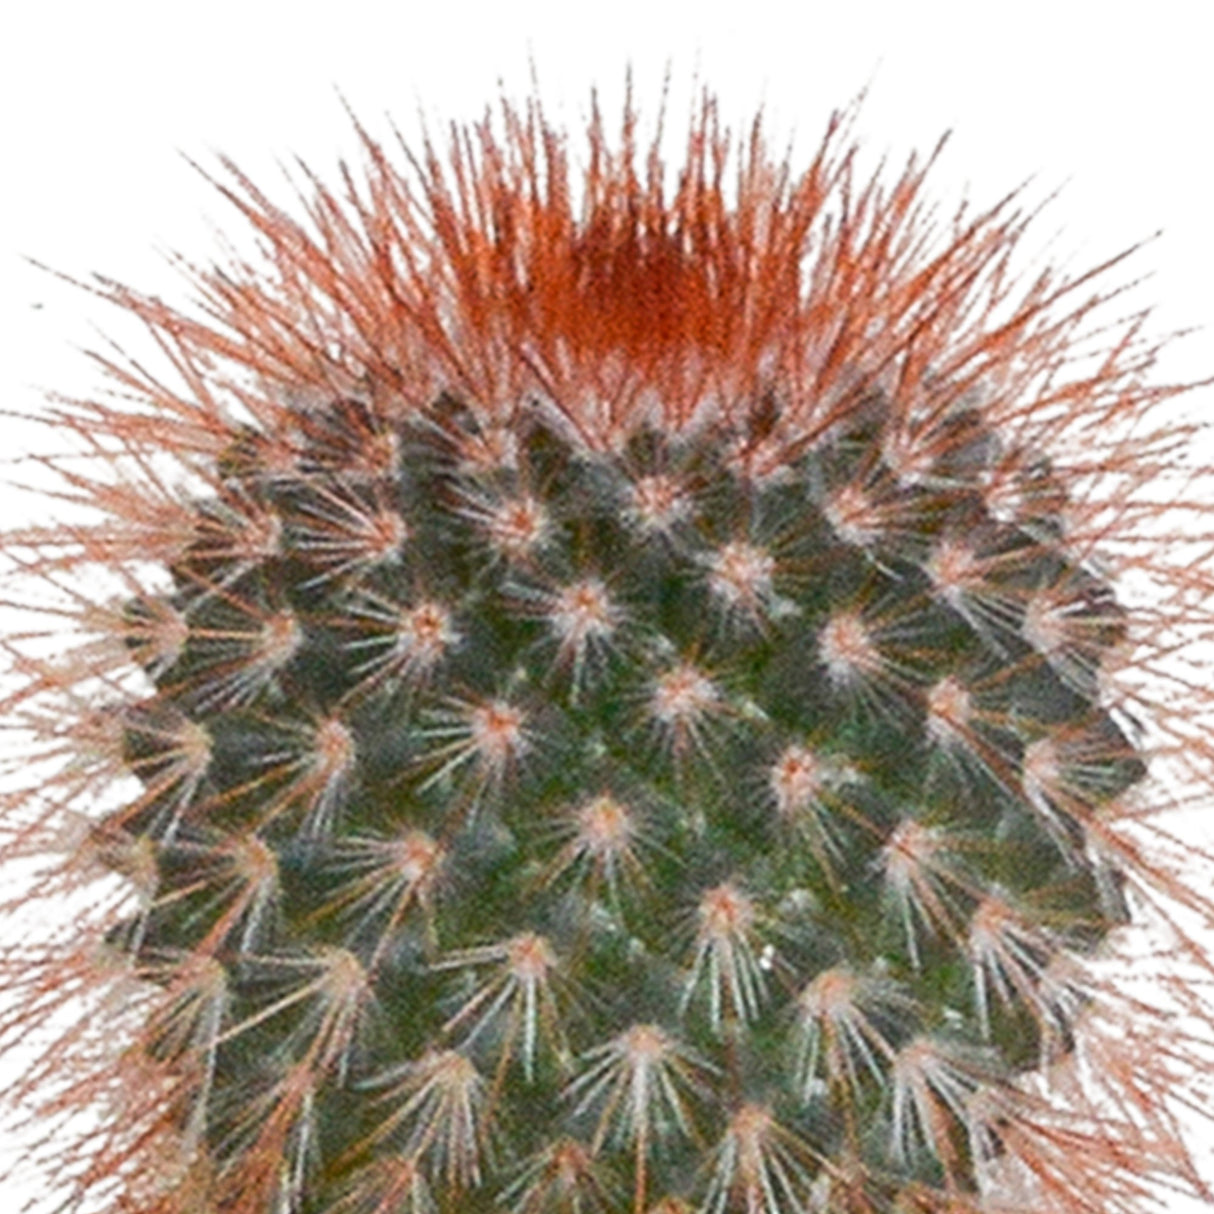 Livraison plante Coffret cactus et ses caches - pots blancs - Lot de 5 plantes, h40cm